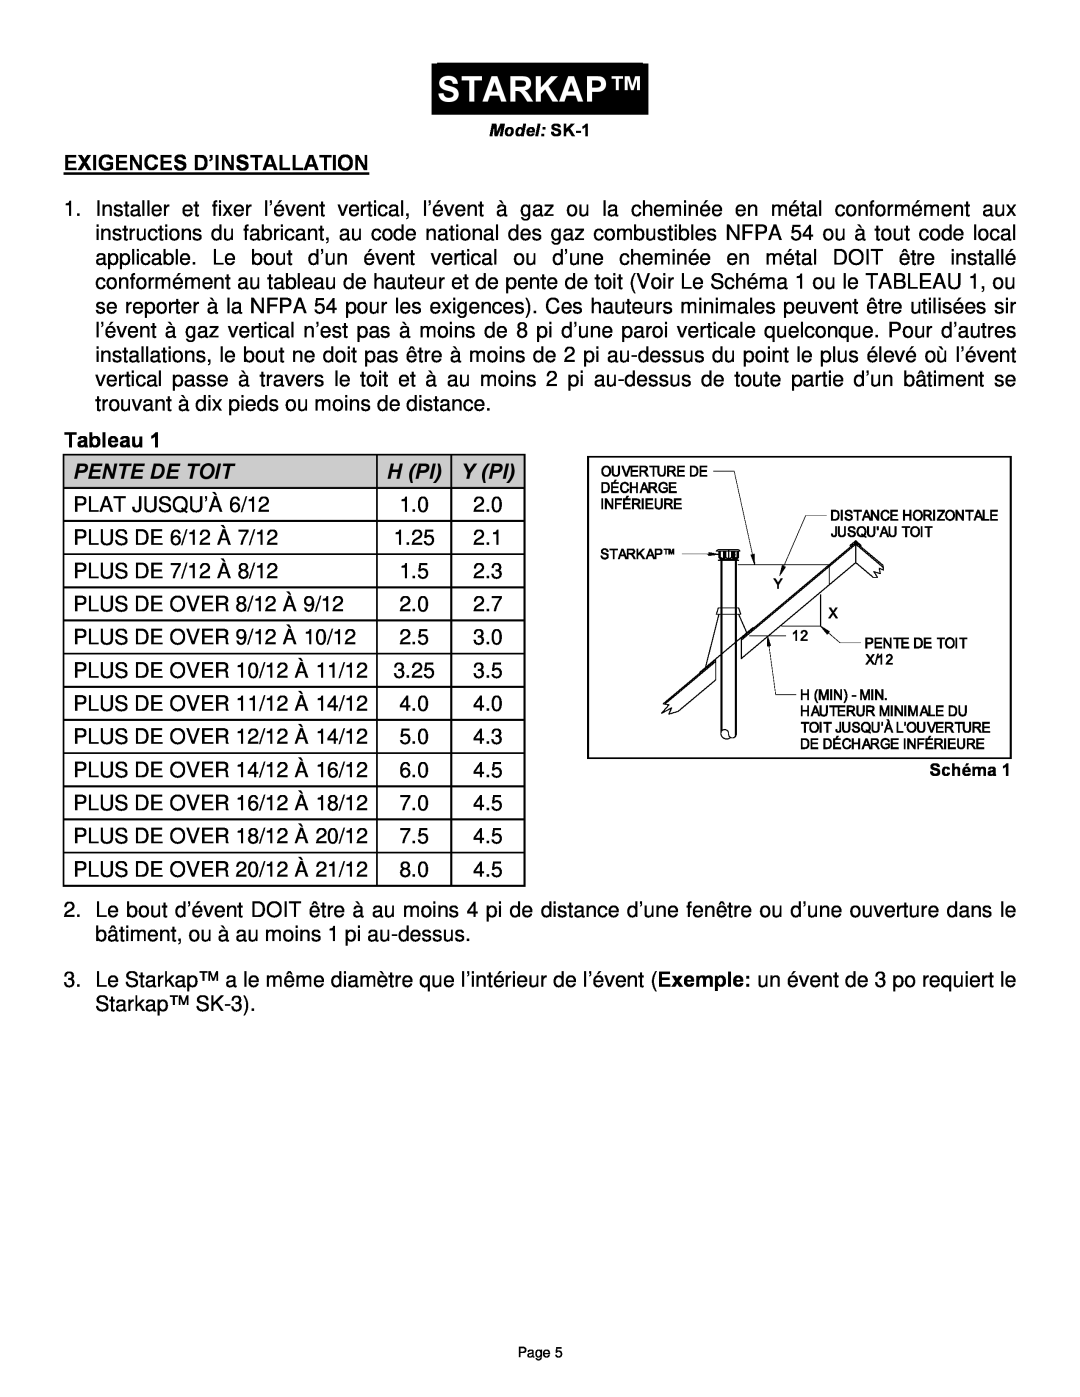 Field Controls SK-1 manual Starkap, Exigences D’Installation, Tableau, Pente De Toit, H Pi, Y Pi 